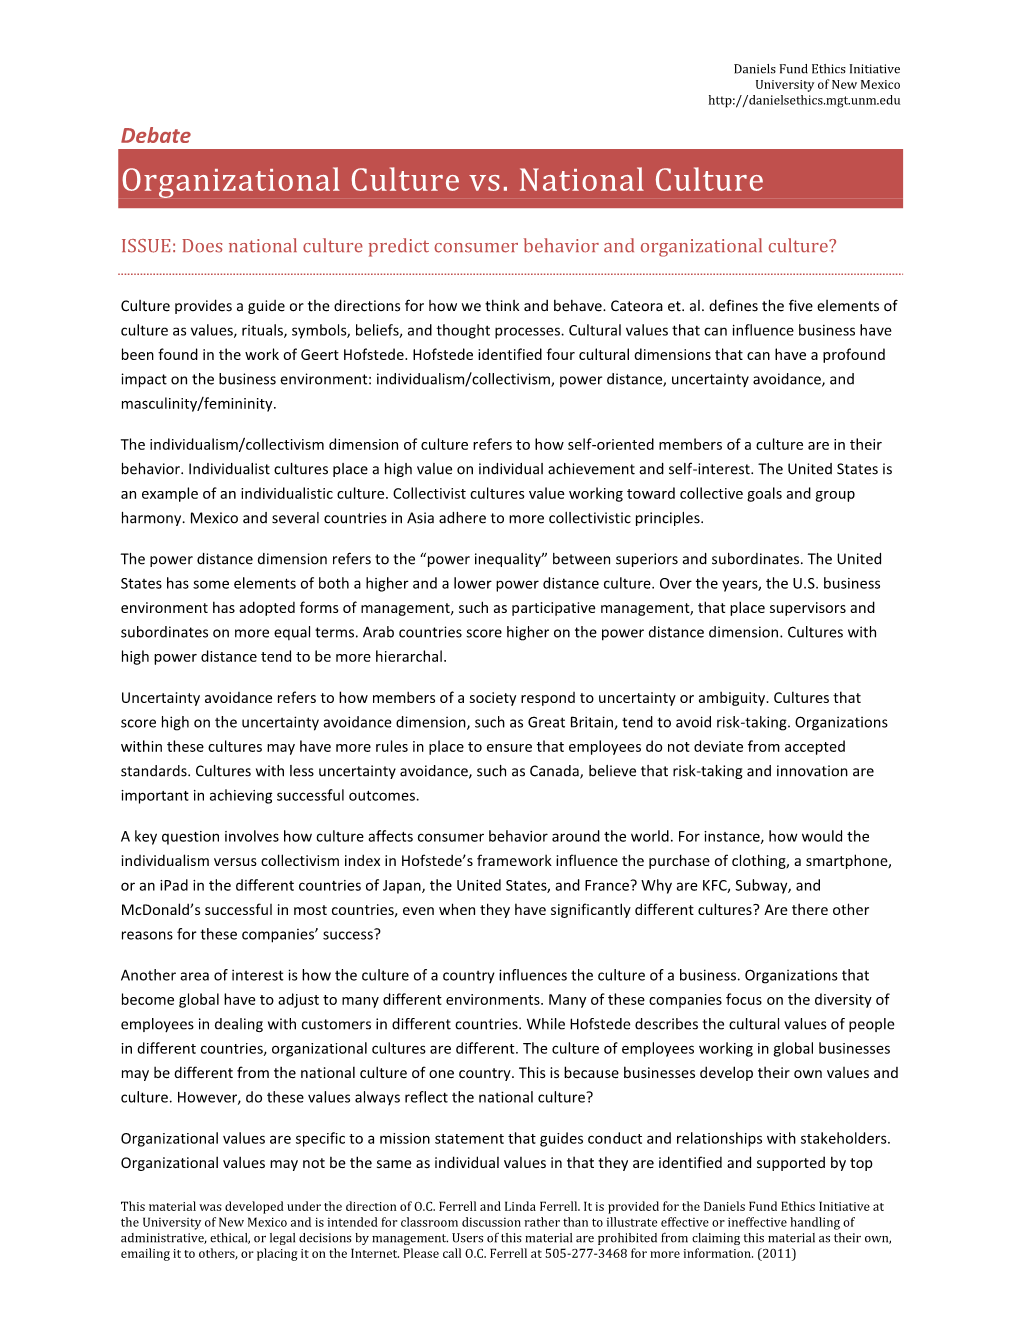 Organizational Culture Vs. National Culture